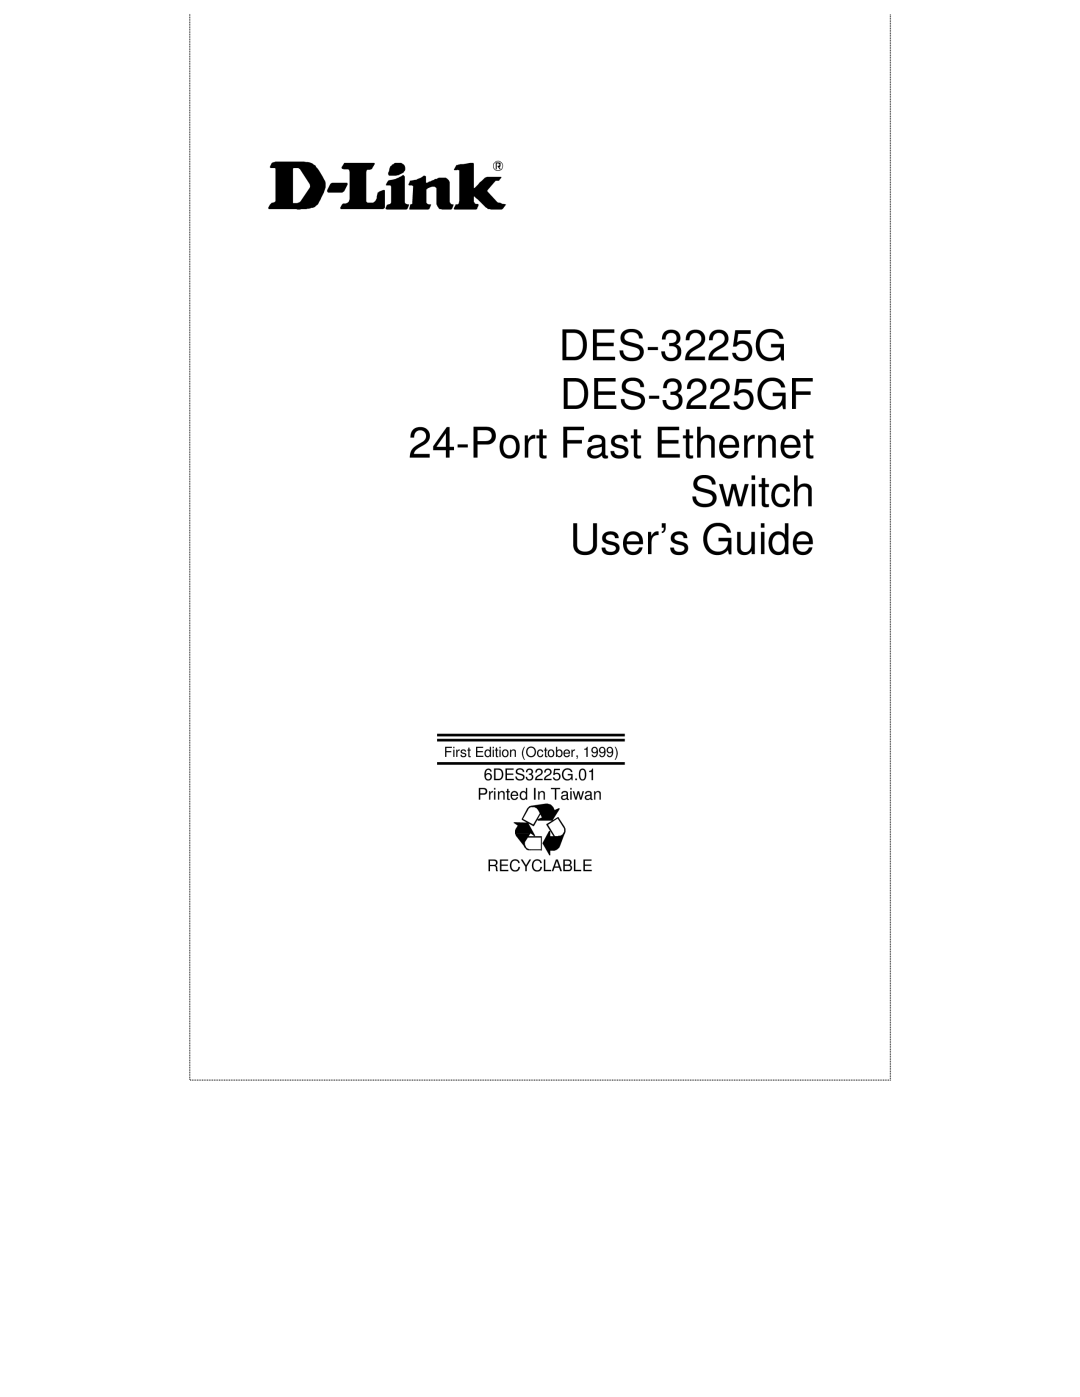 D-Link manual DES-3225G DES-3225GF Port Fast Ethernet Switch User’s Guide 